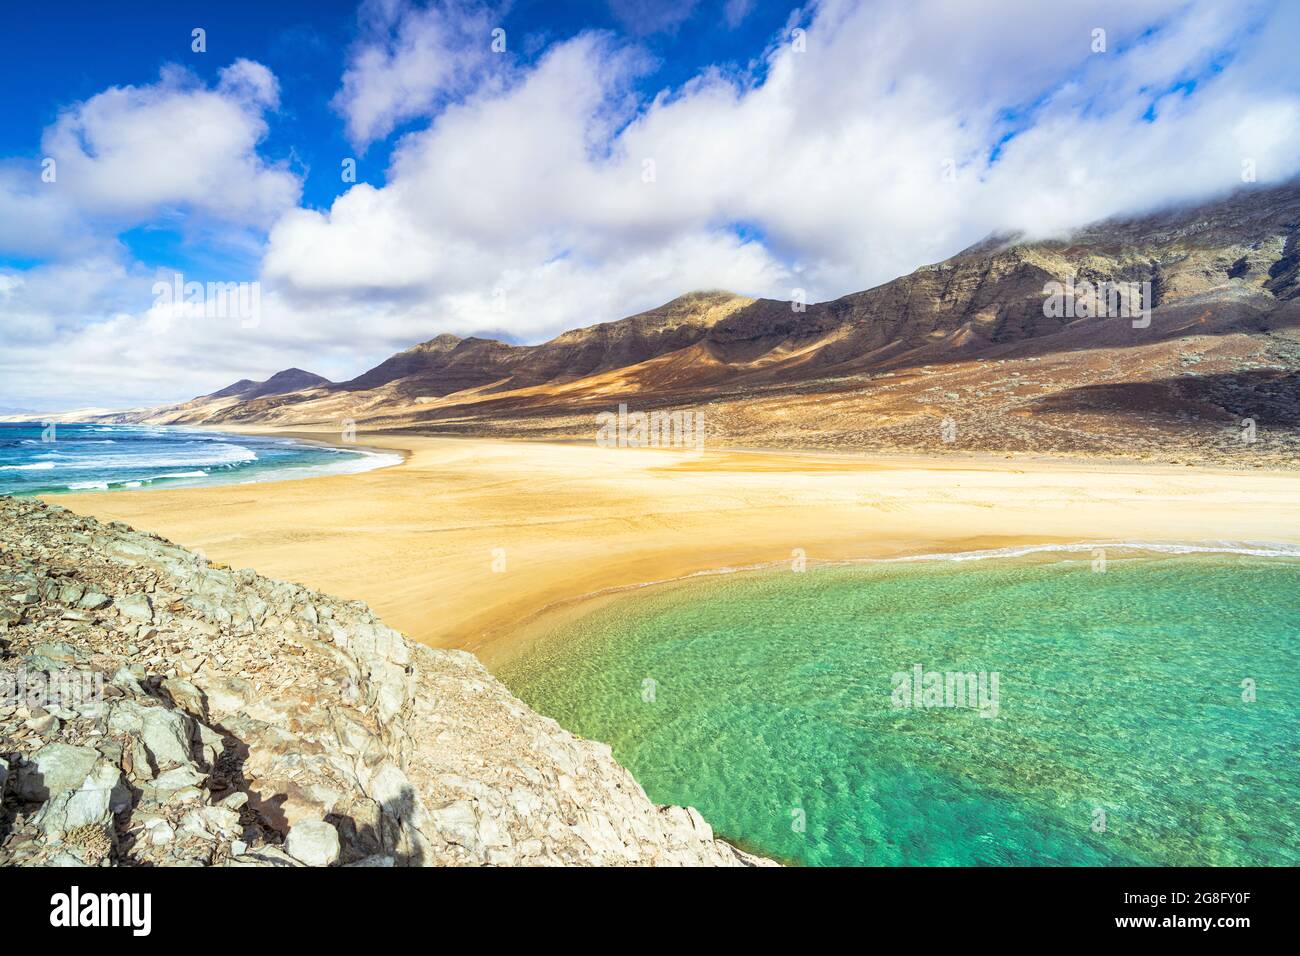 Les deux côtés de l'océan cristal vue de l'îlot d'El Islote, la plage de Cofete, la péninsule de Jandia, Fuerteventura, les îles Canaries, Espagne, Atlantique, Europe Banque D'Images